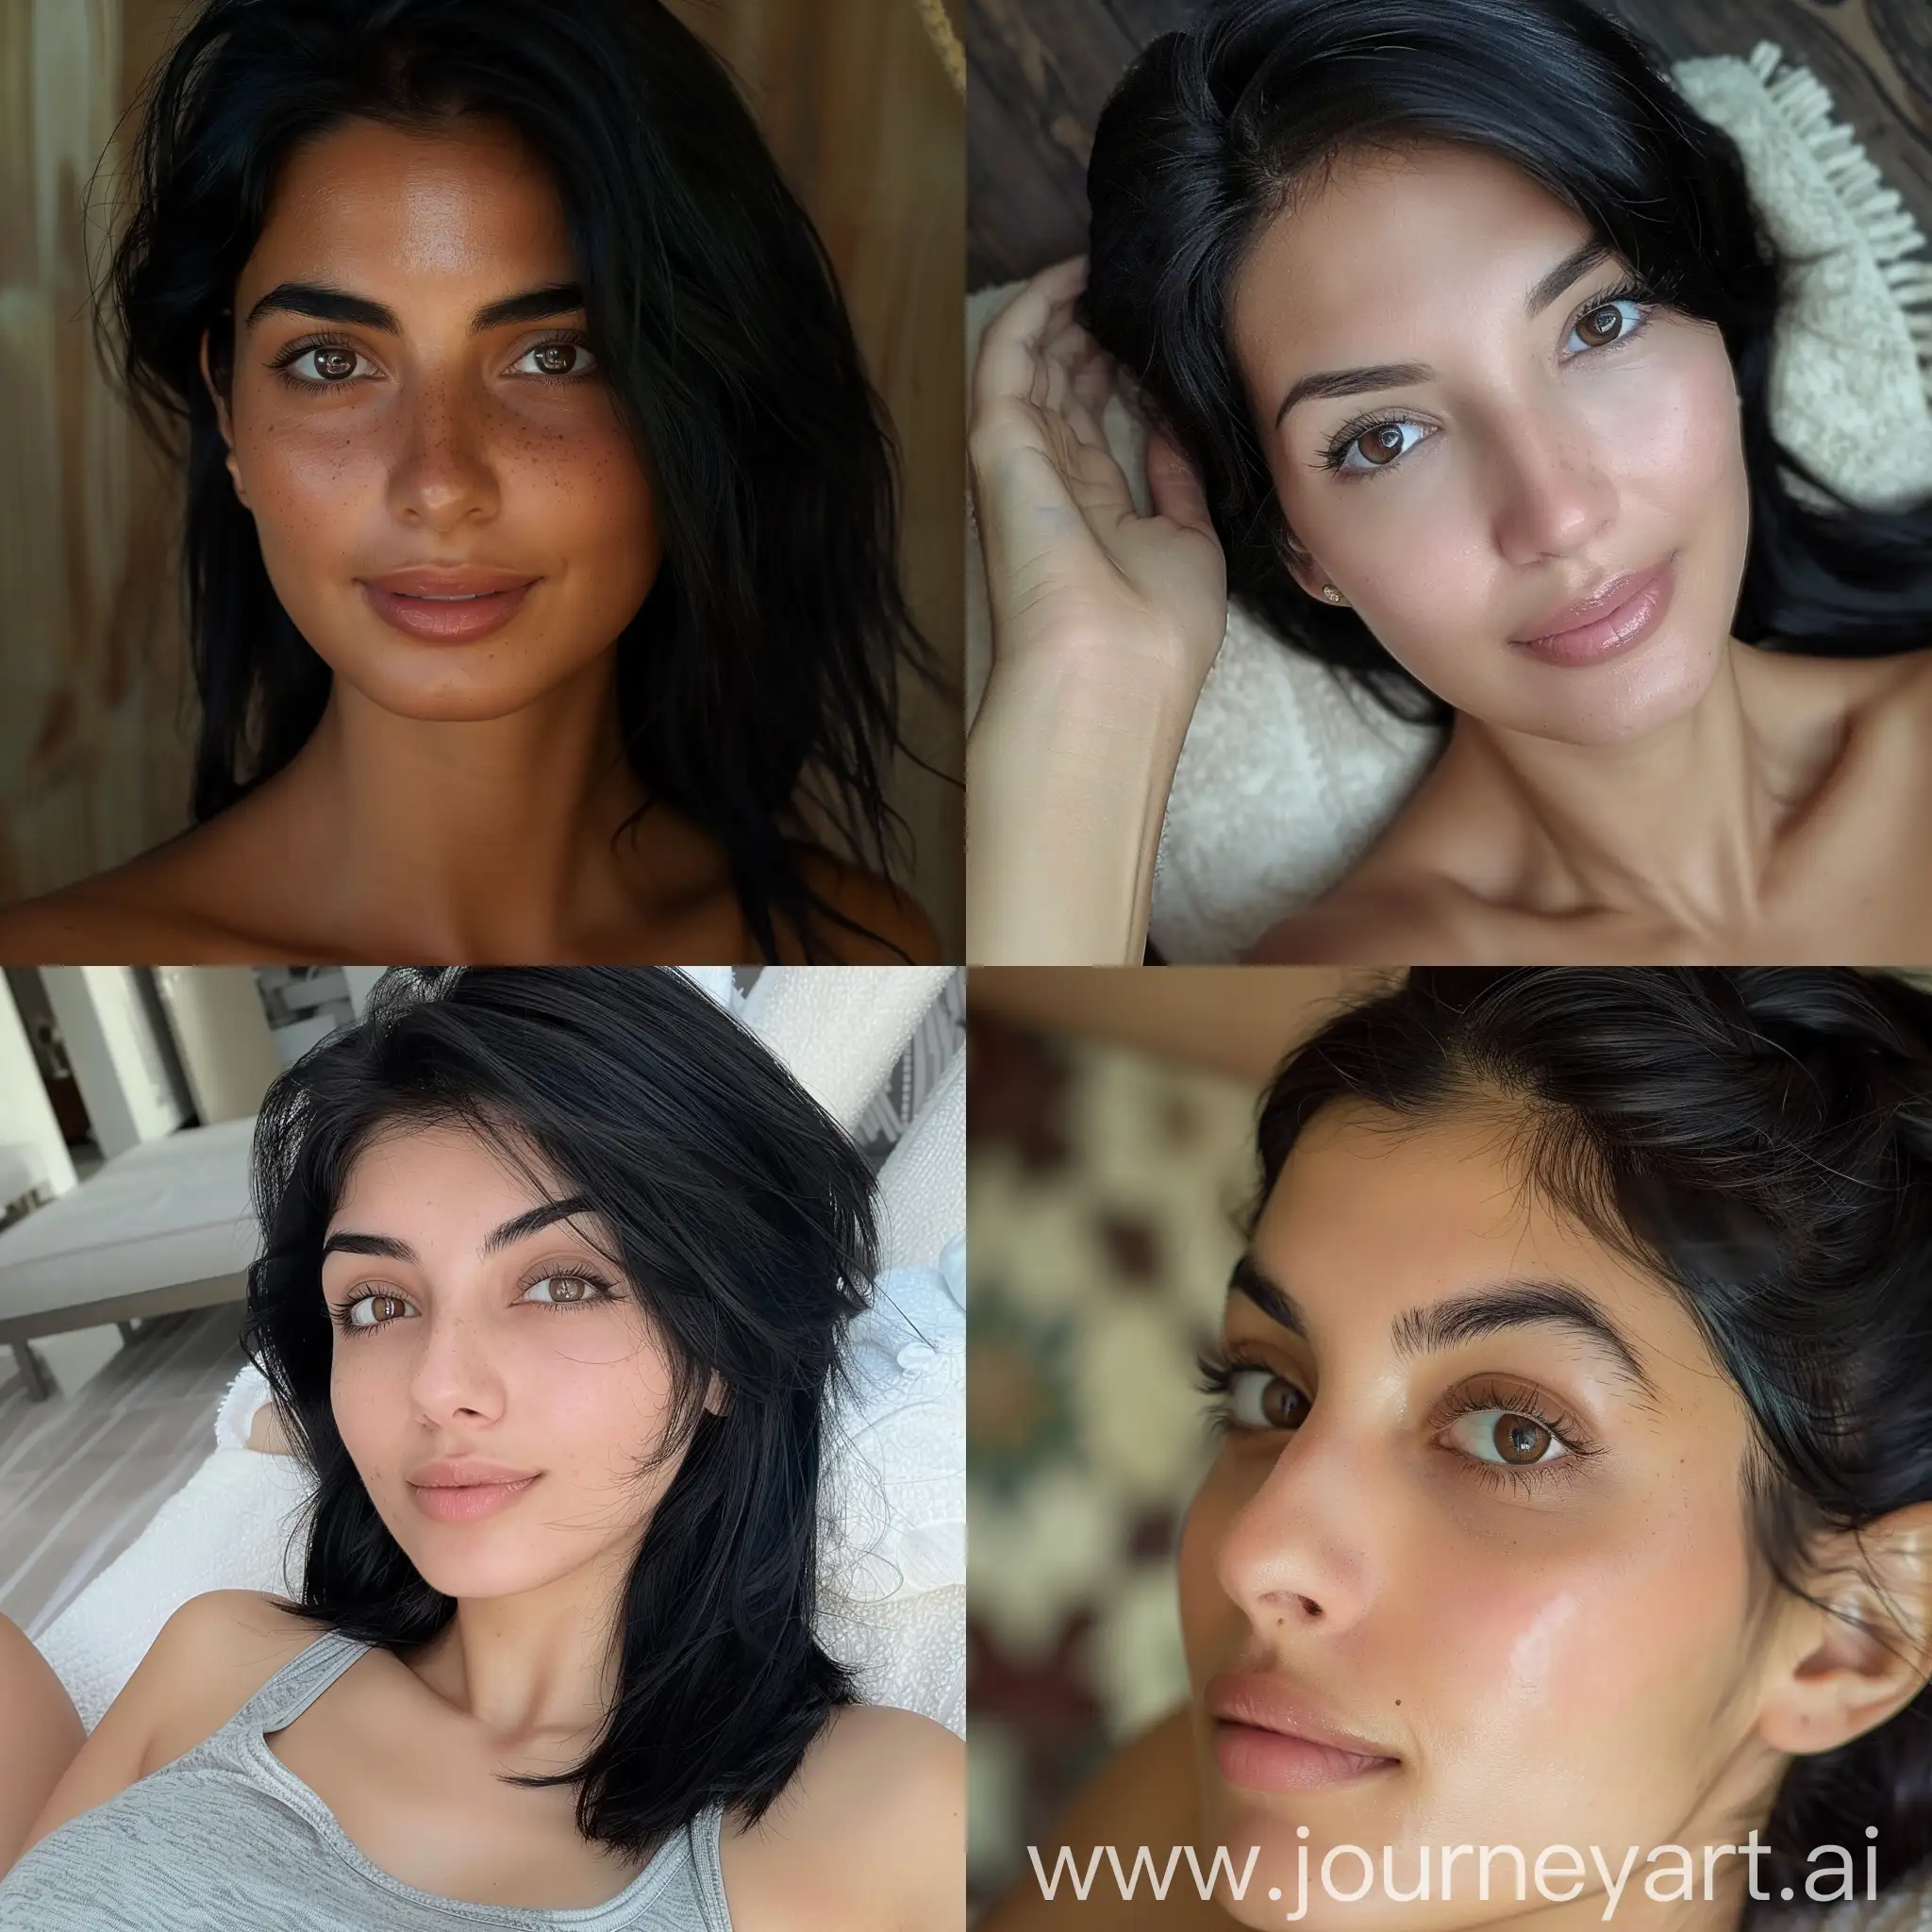 Красивая смуглая армянская девушка с чёрными волосами и карими глазами на сеансе массажа